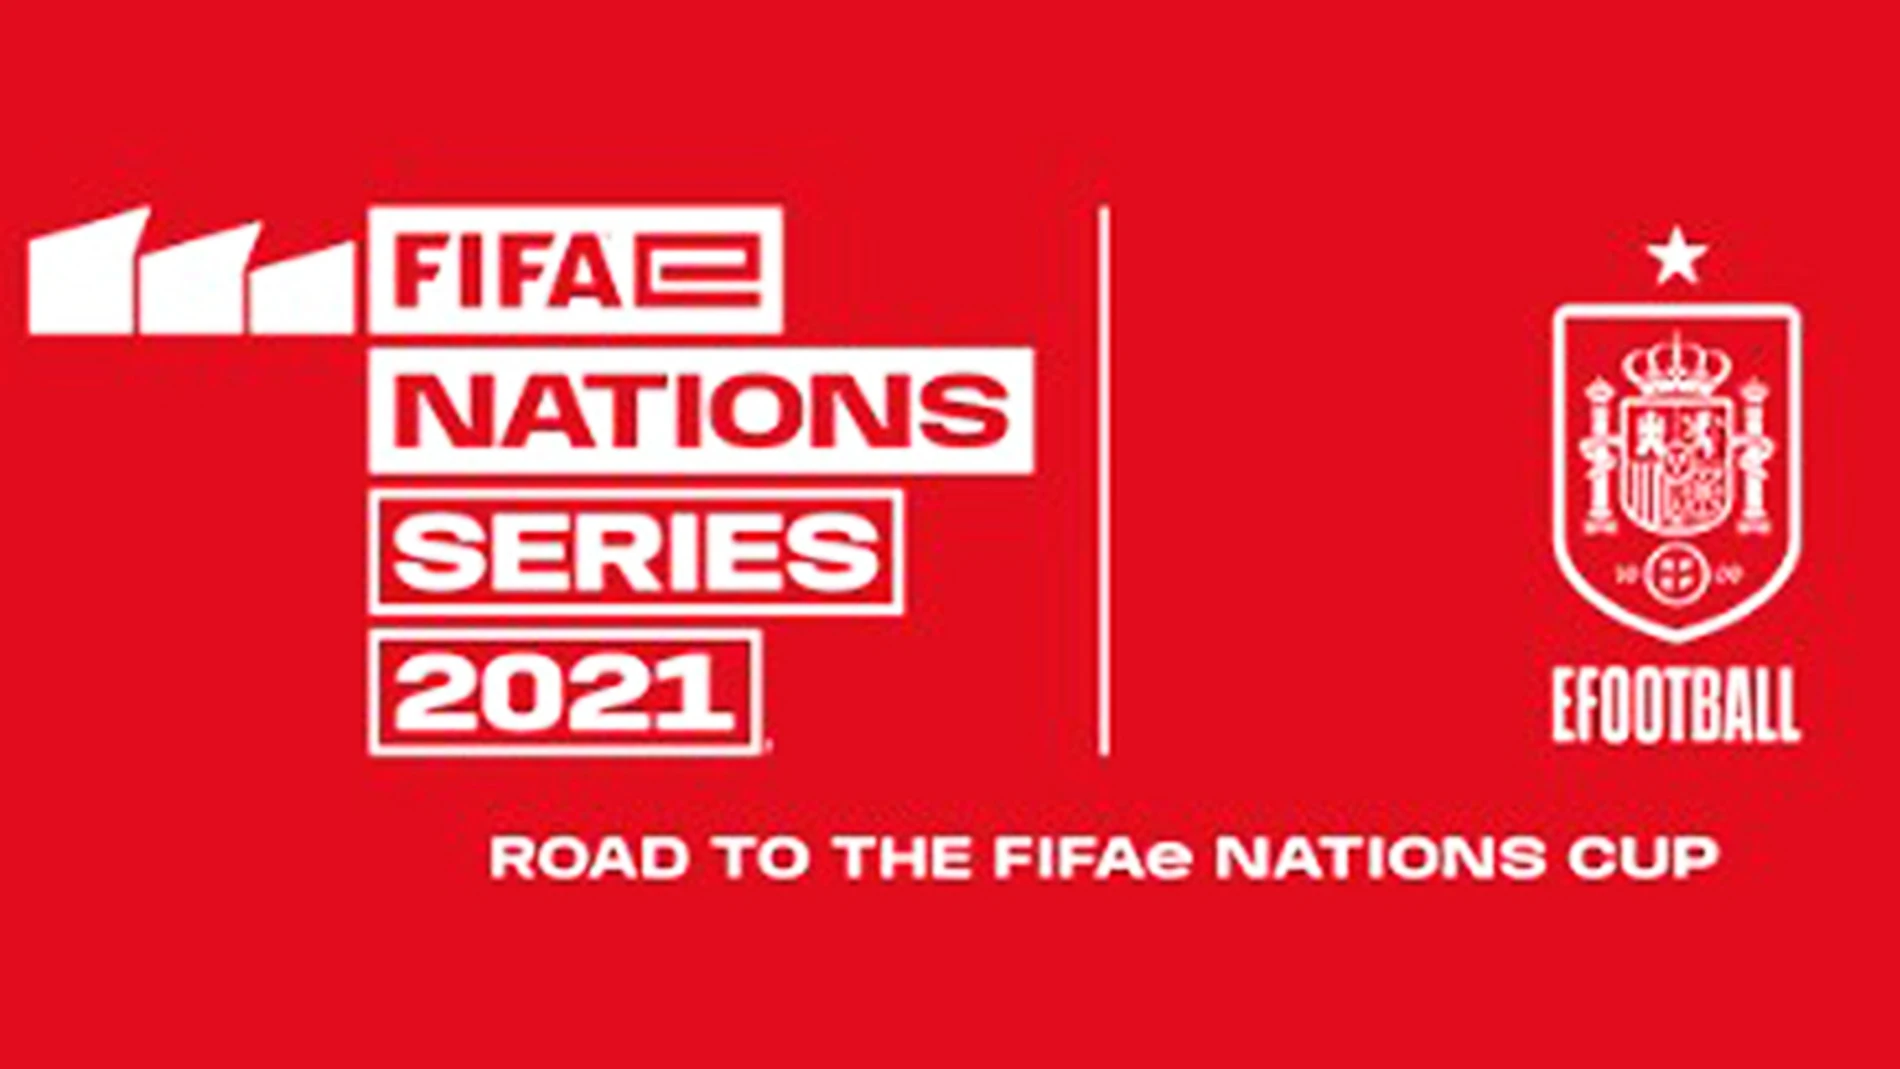 Se deciden los jugadores que representarán a España en la Fifae Nations Series 2021